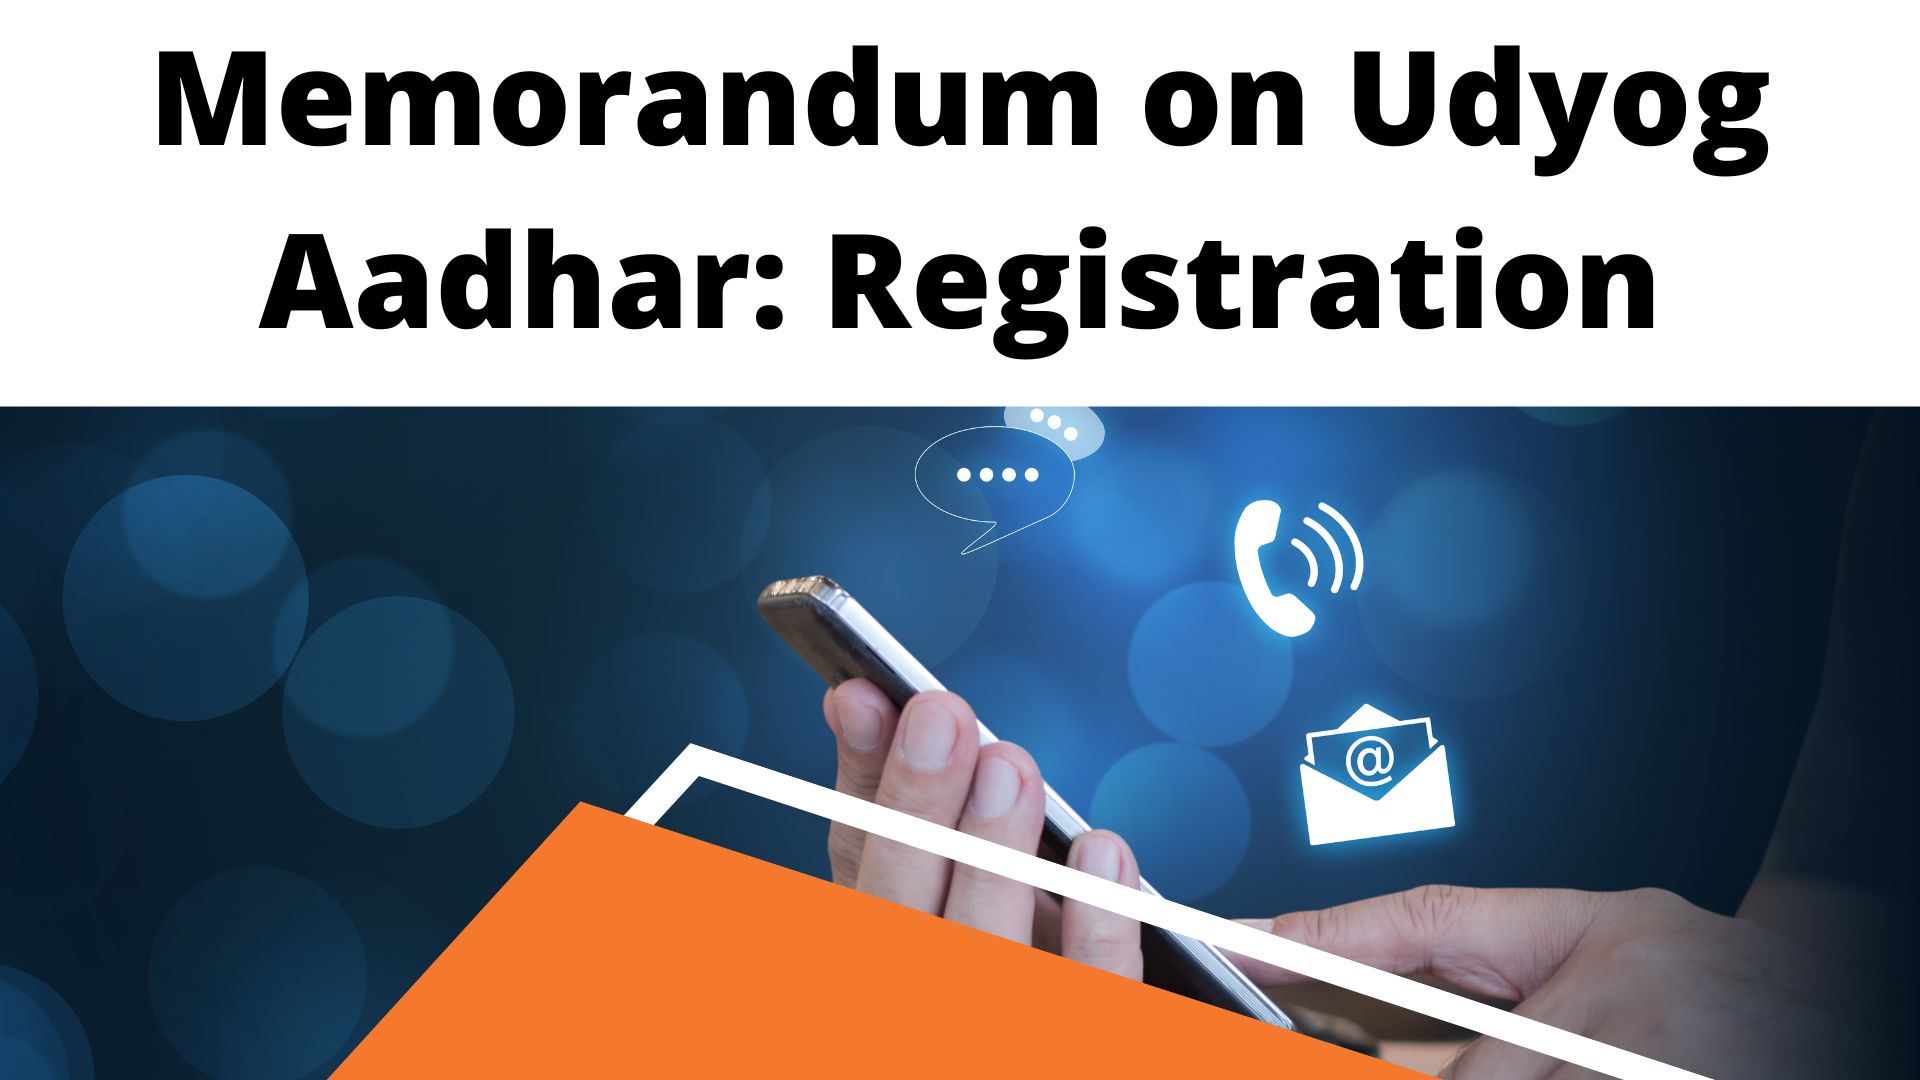 Memorandum on Udyog Aadhar: Registration